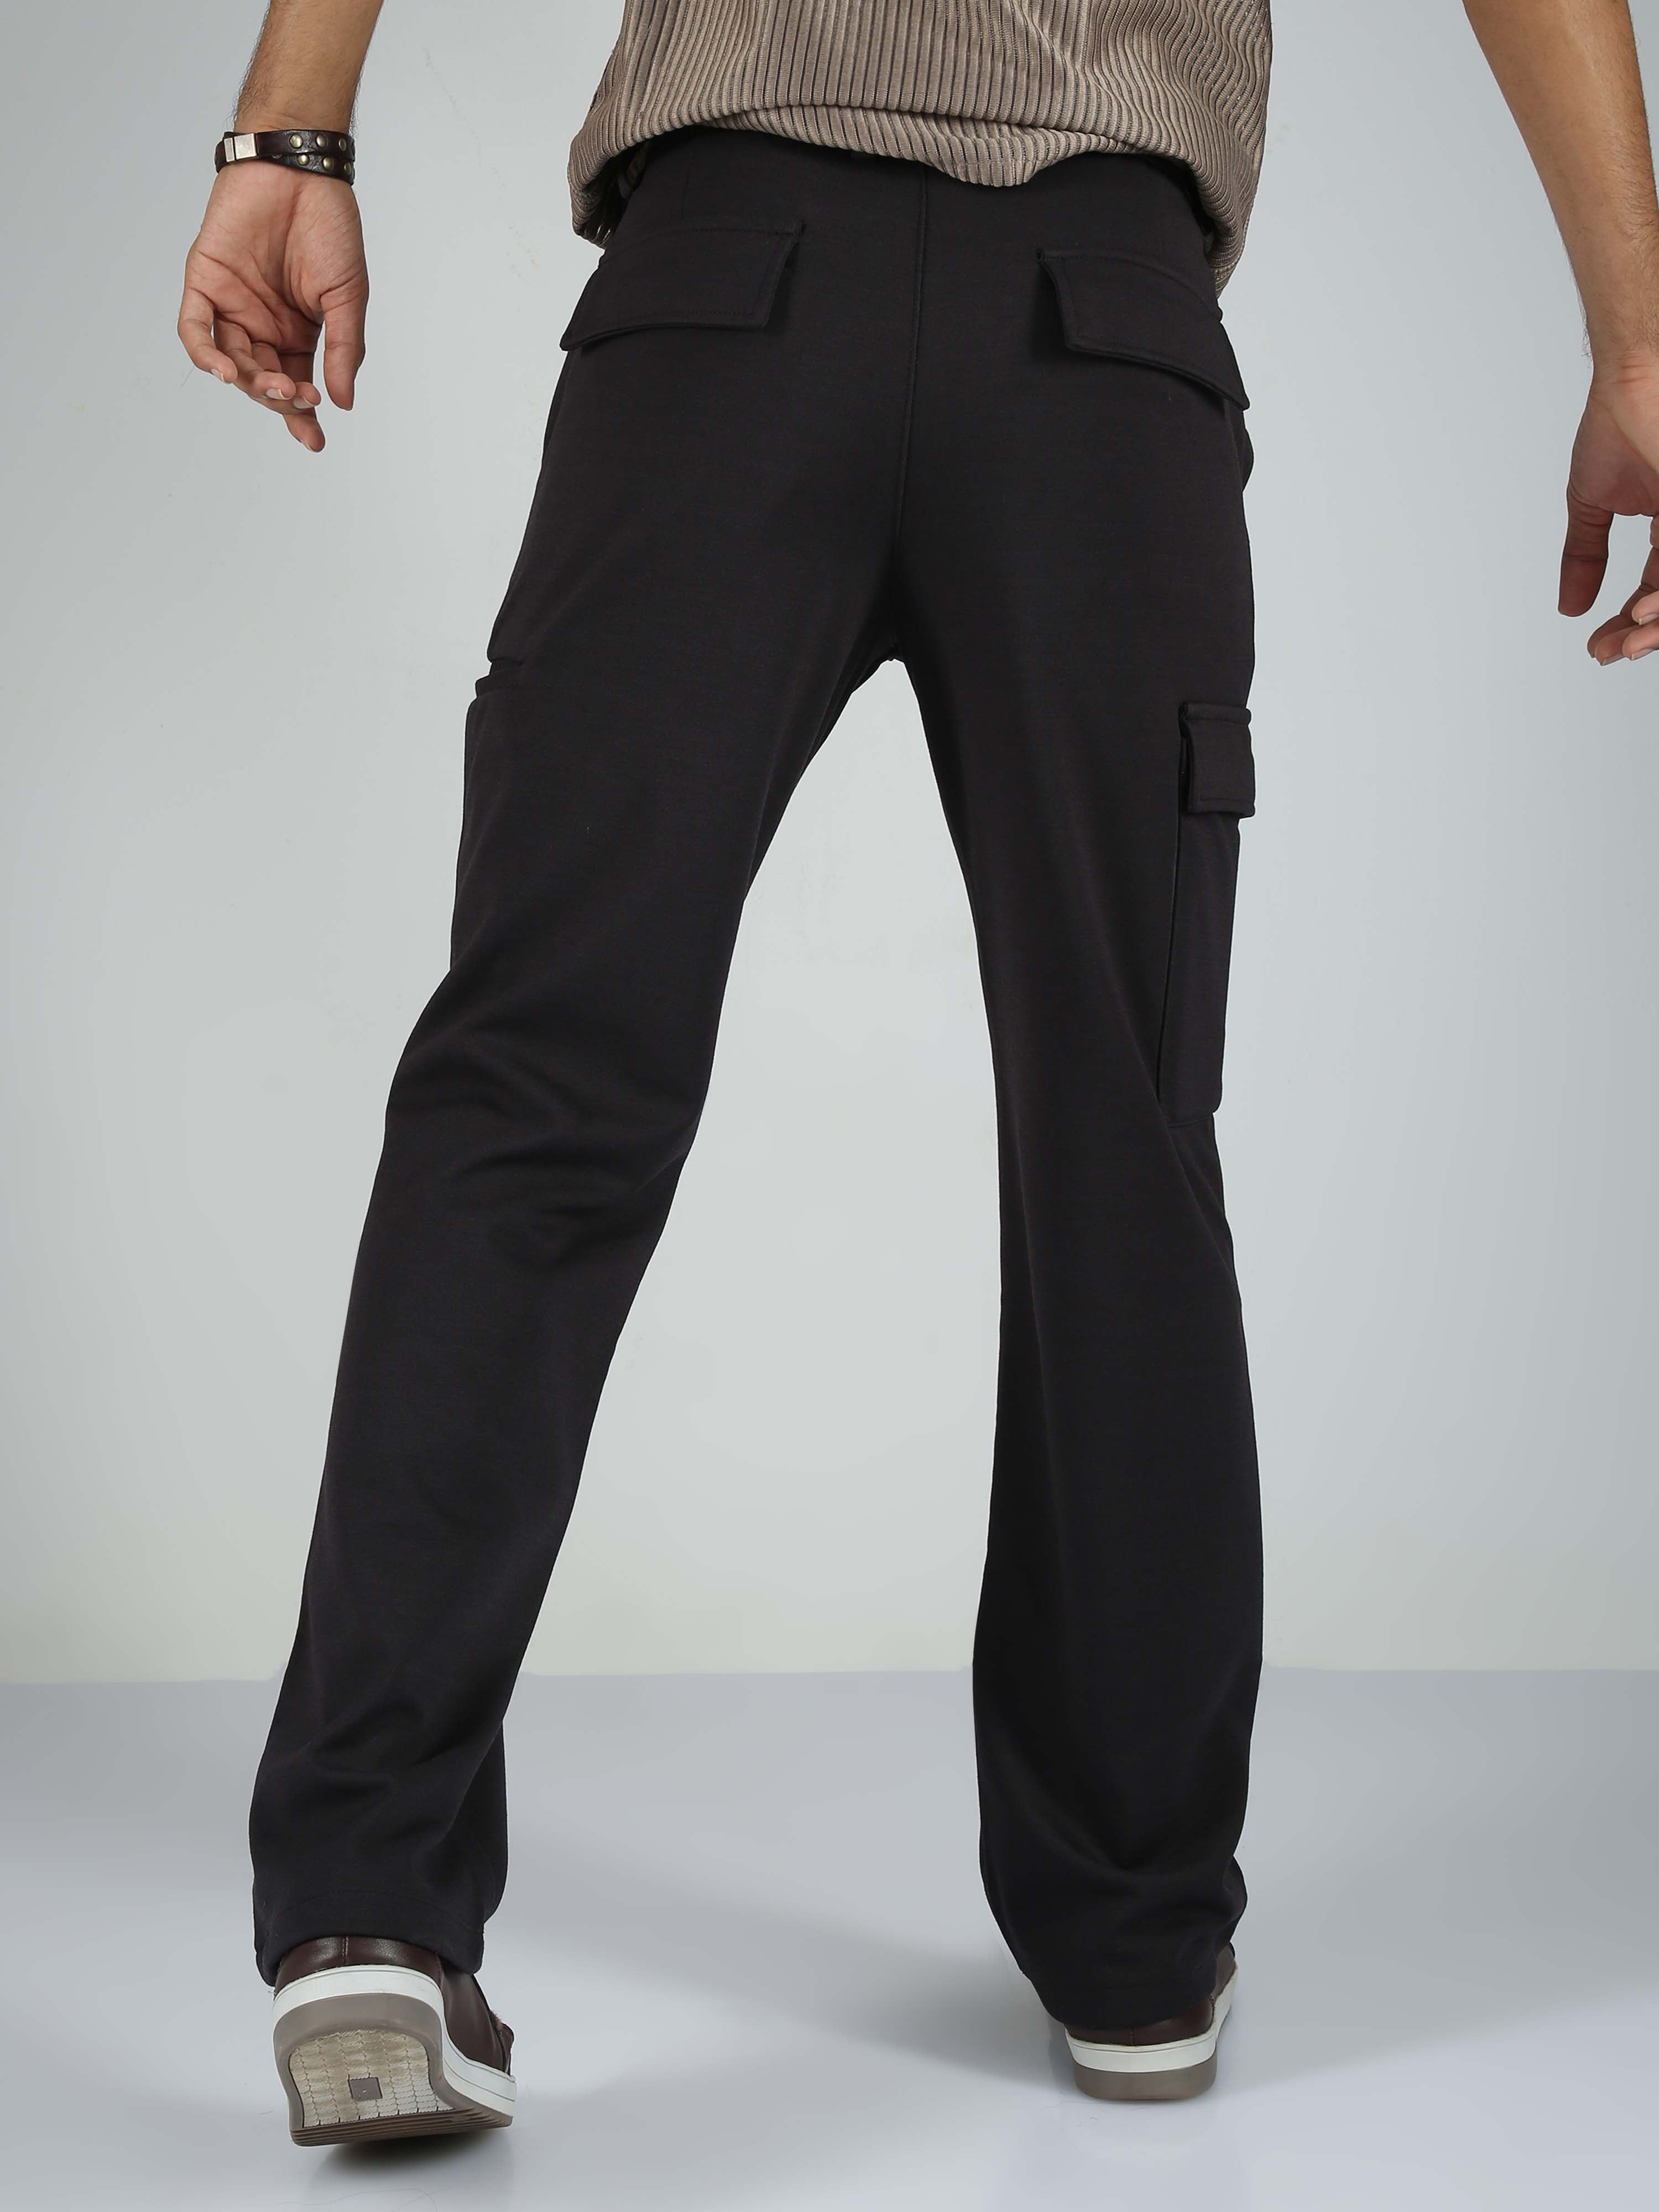 Straight Fit Suit Pants - Black - Men | H&M US